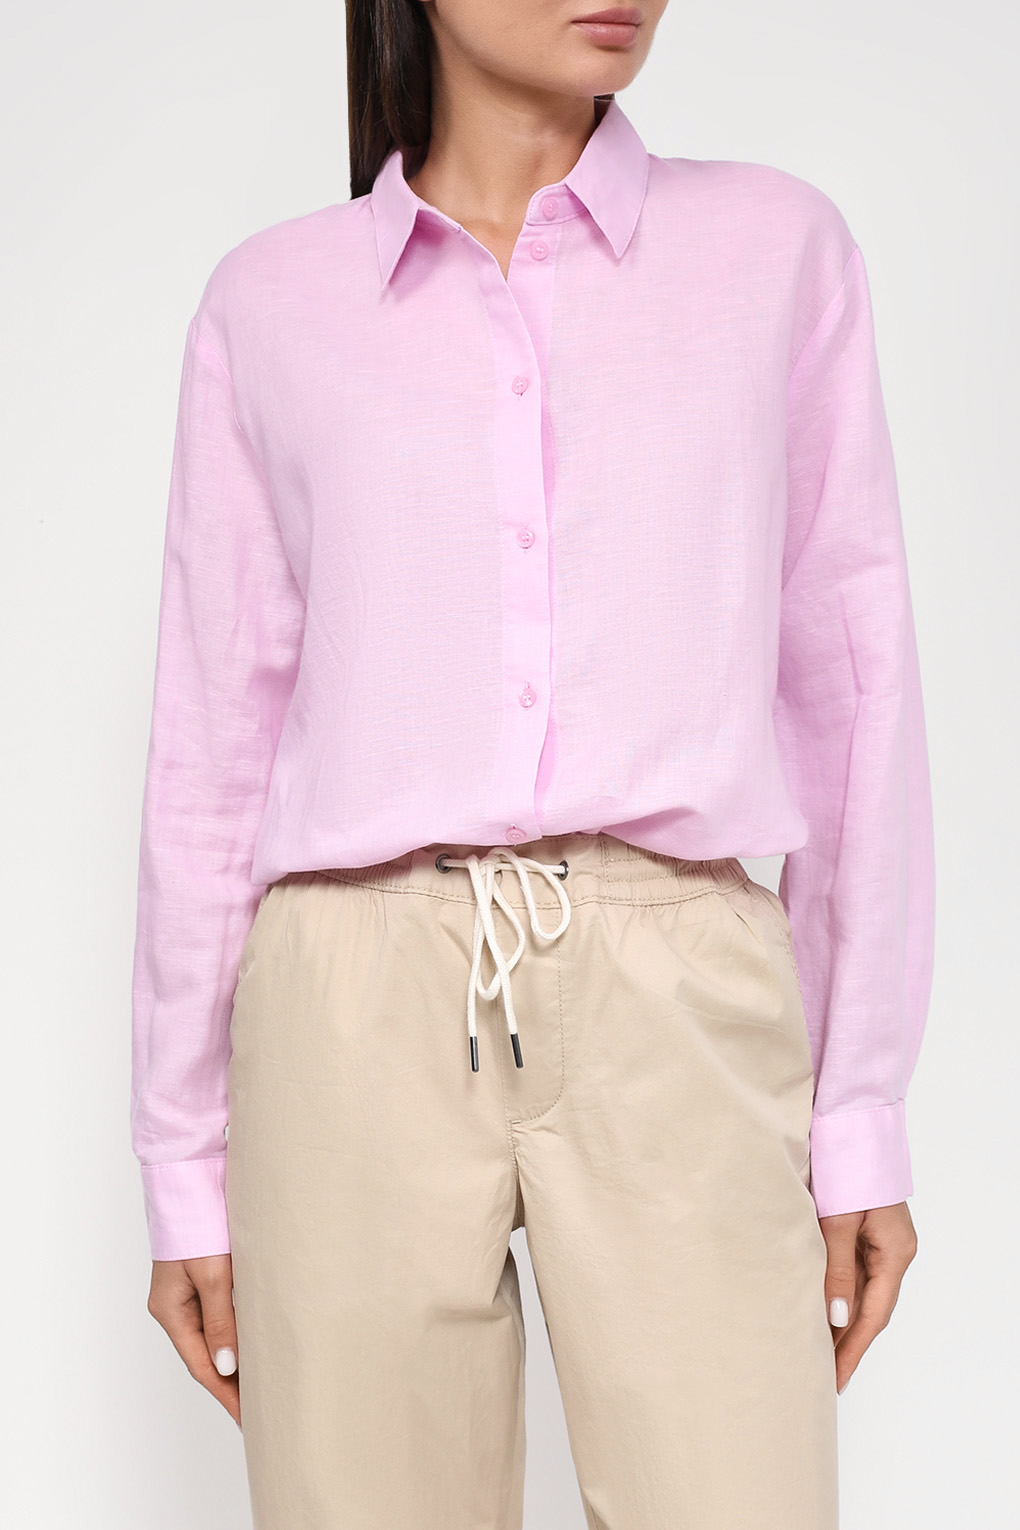 Рубашка женская Esprit Casual 993EE1F301 розовая M